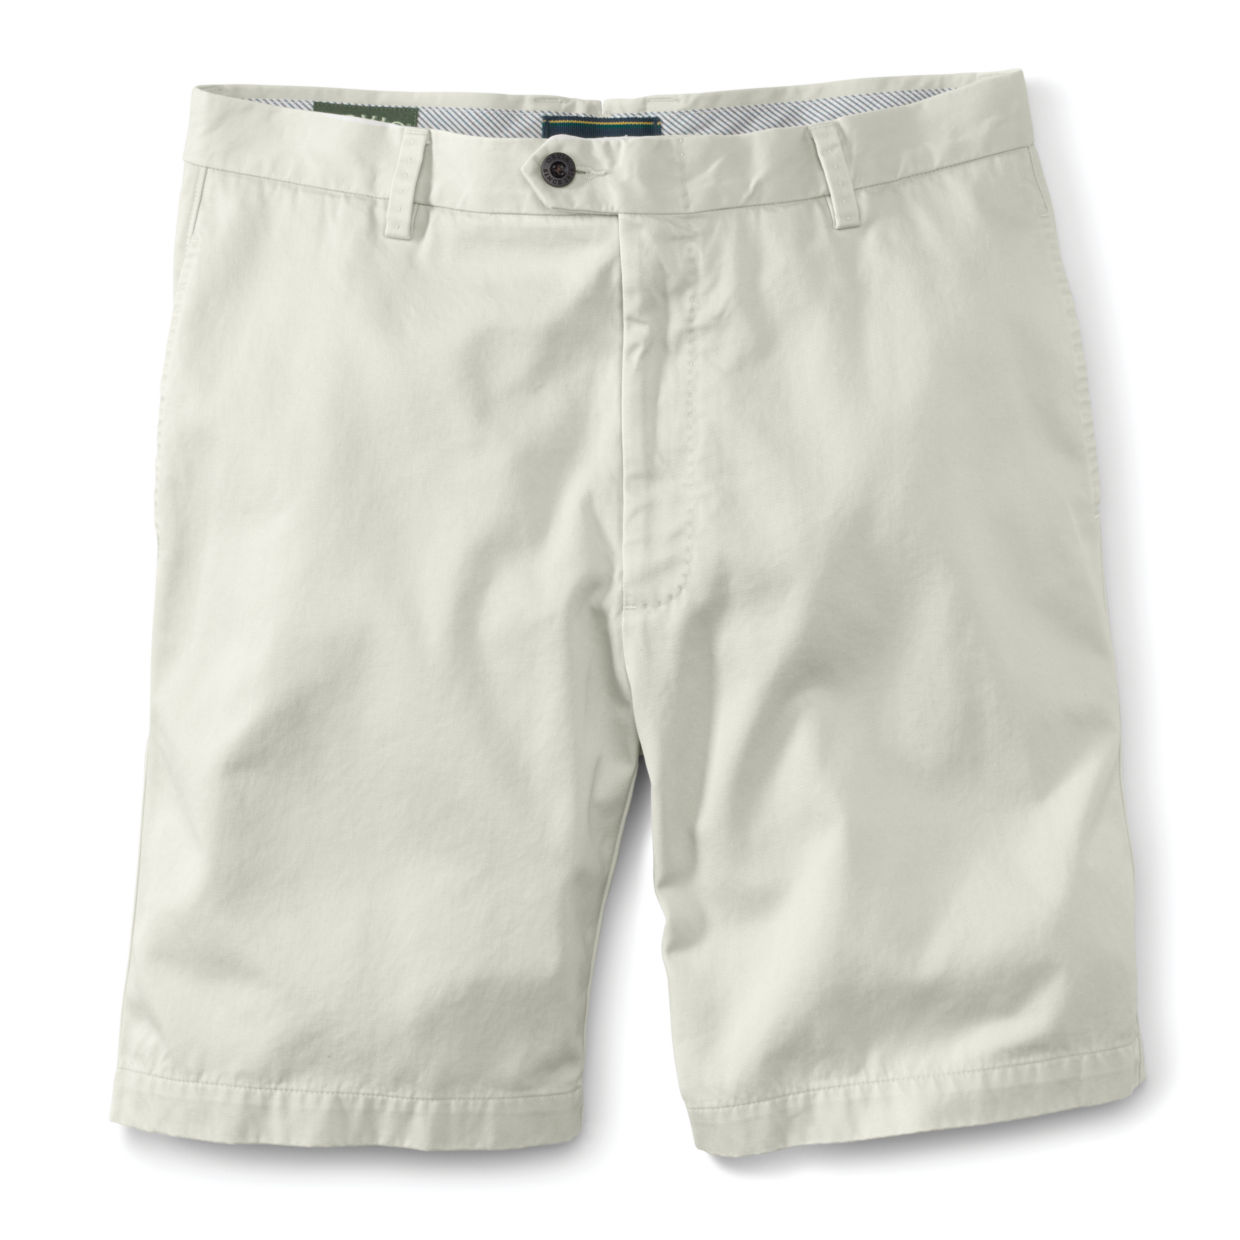 Angler Chino Shorts